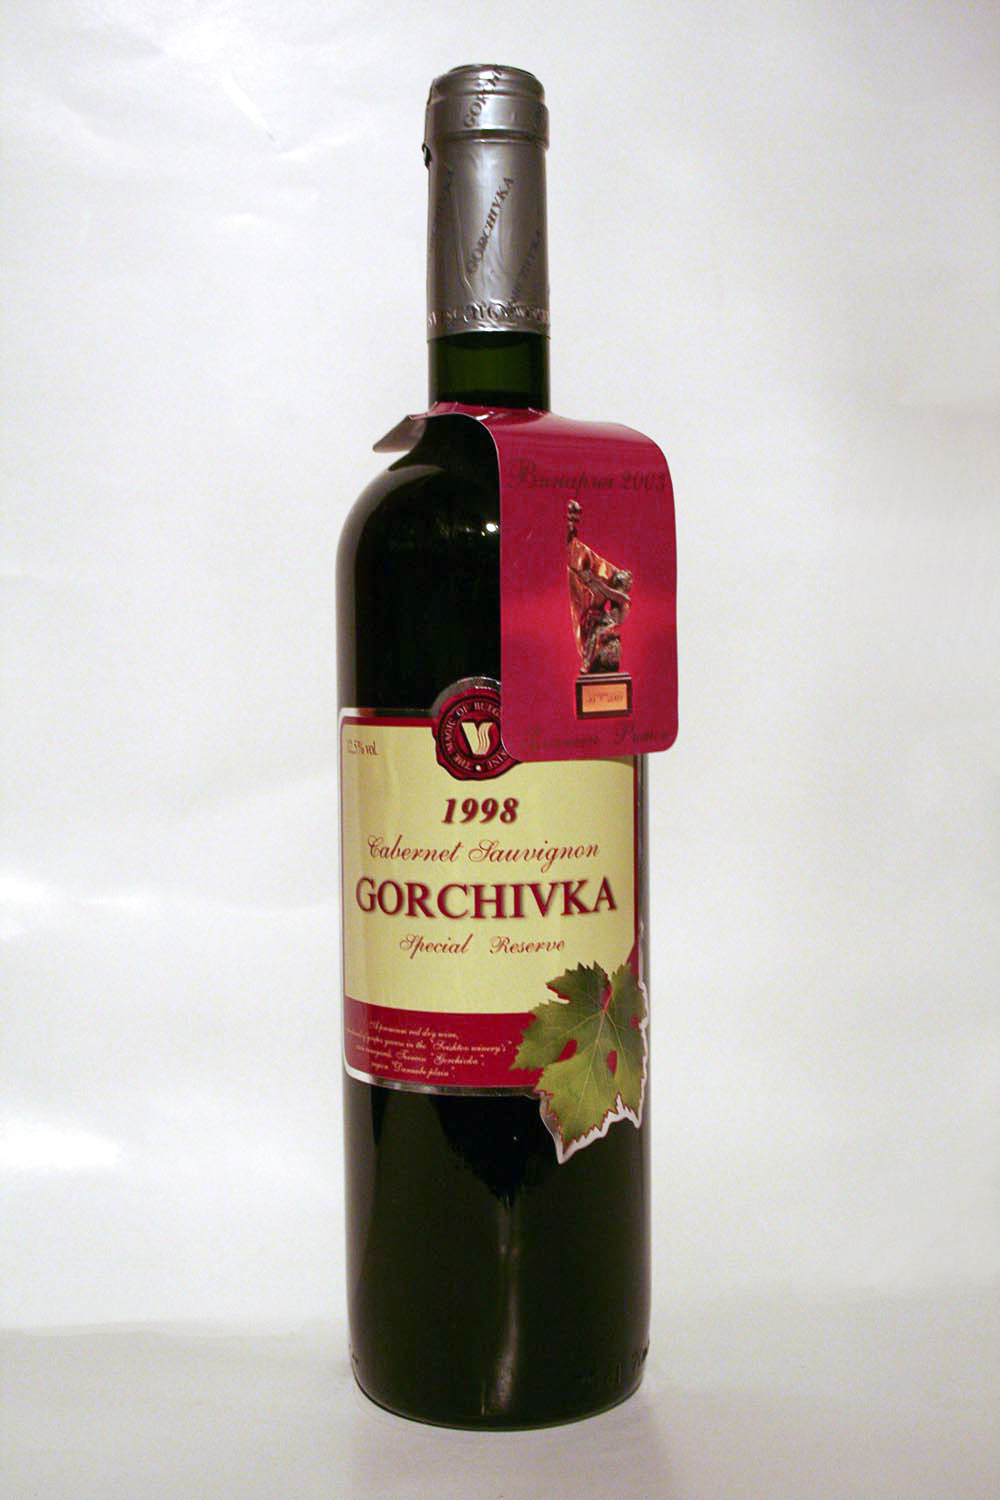 Gorchivka Cabernet Sauvignon Special Reserve 1998